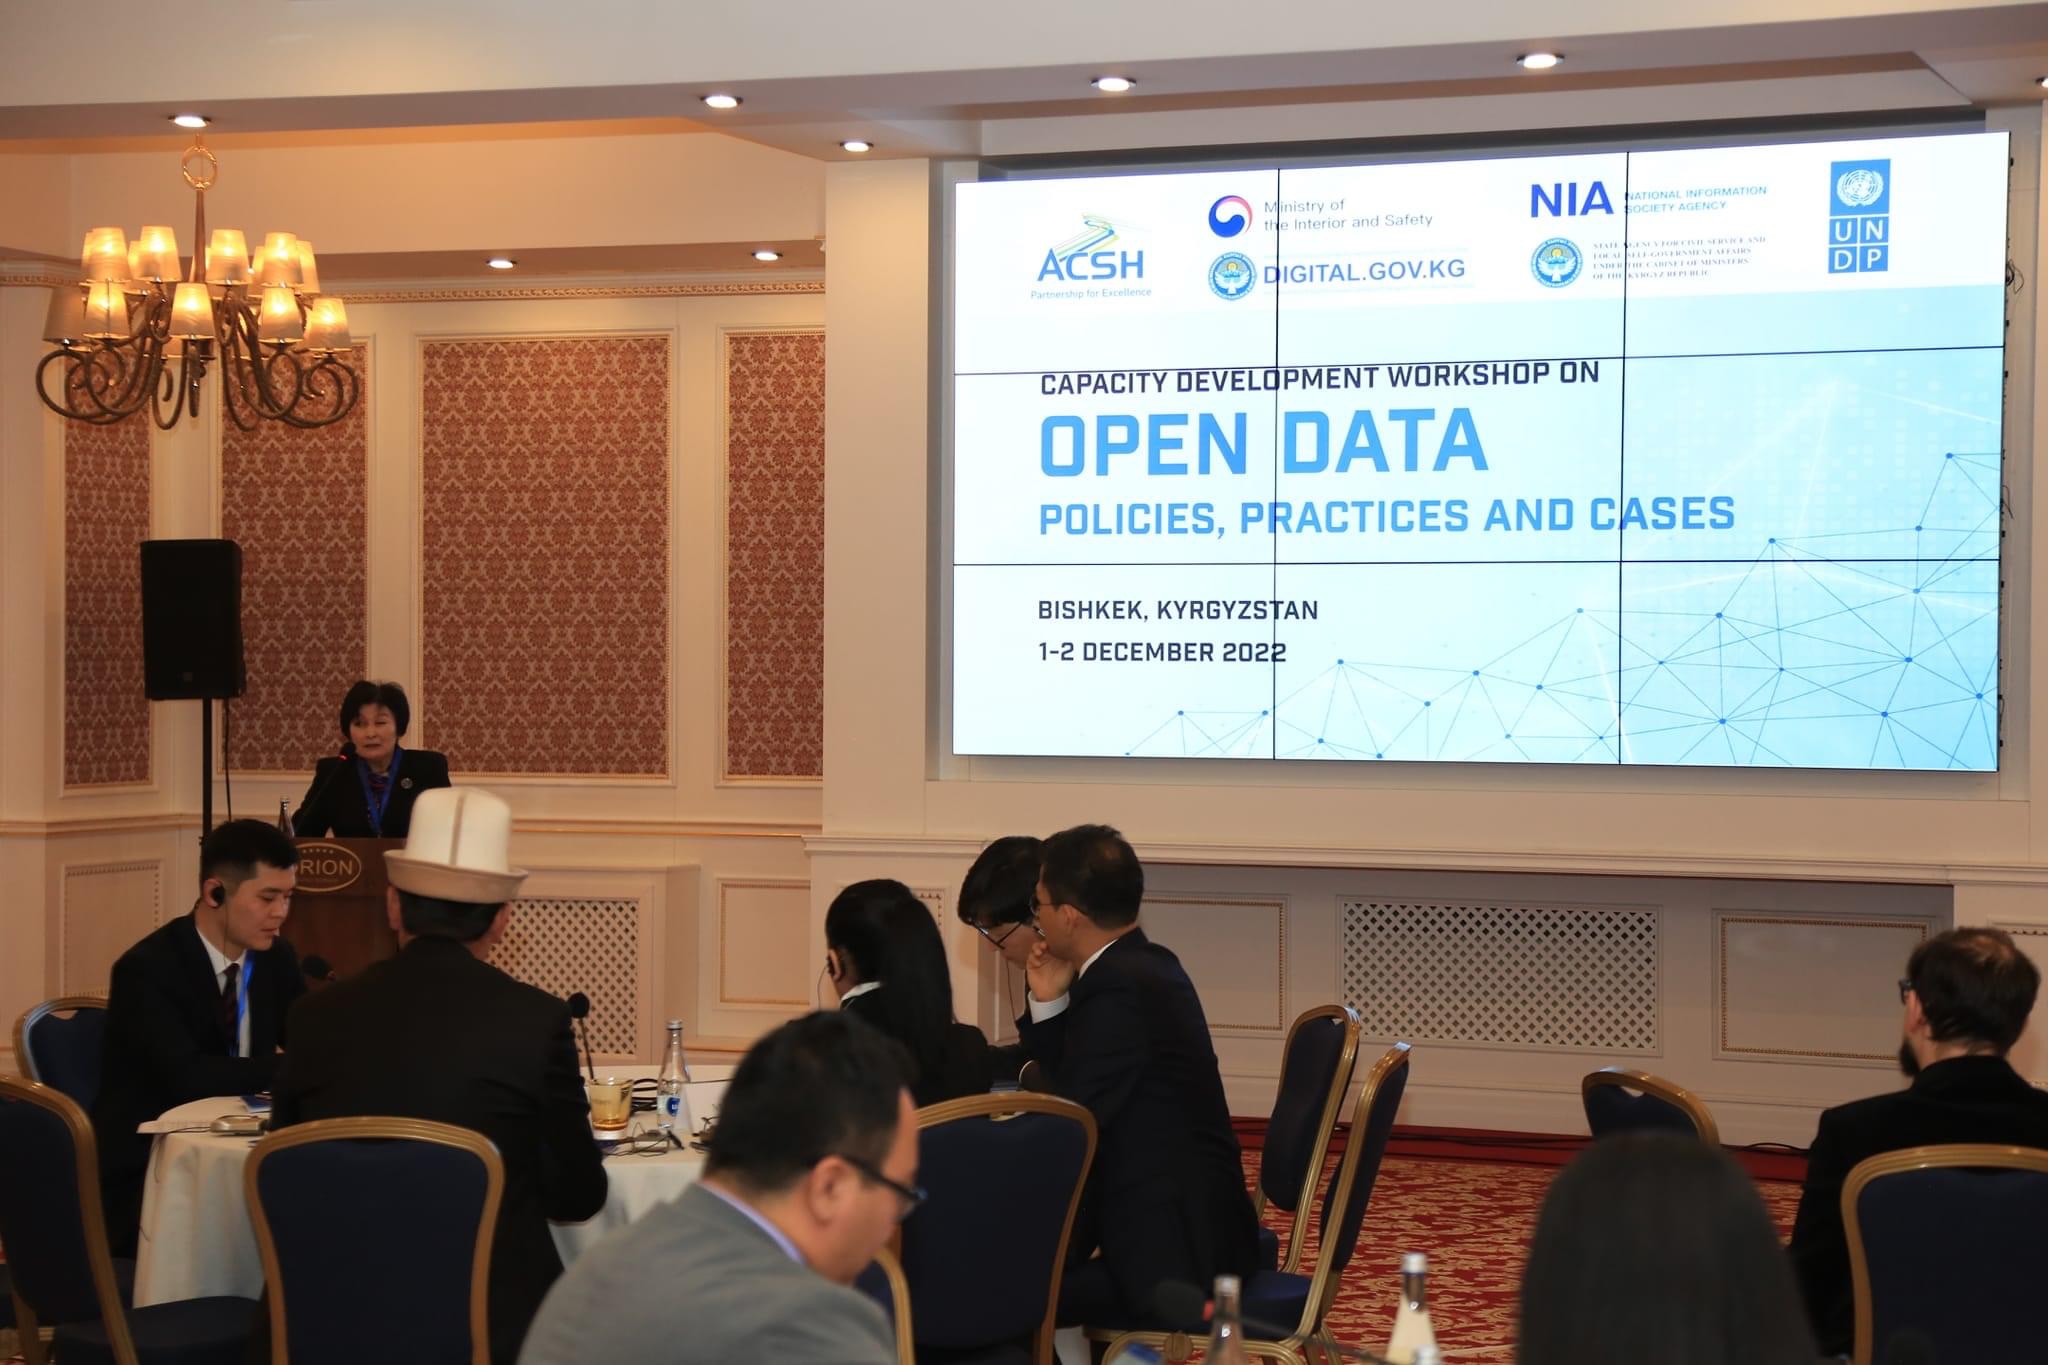 Передовые практики в рамках политики открытых данных и успешные кейсы были представлены международными экспертами Республики Корея и KPMG государственным служащим Центральной Азии и Кавказа